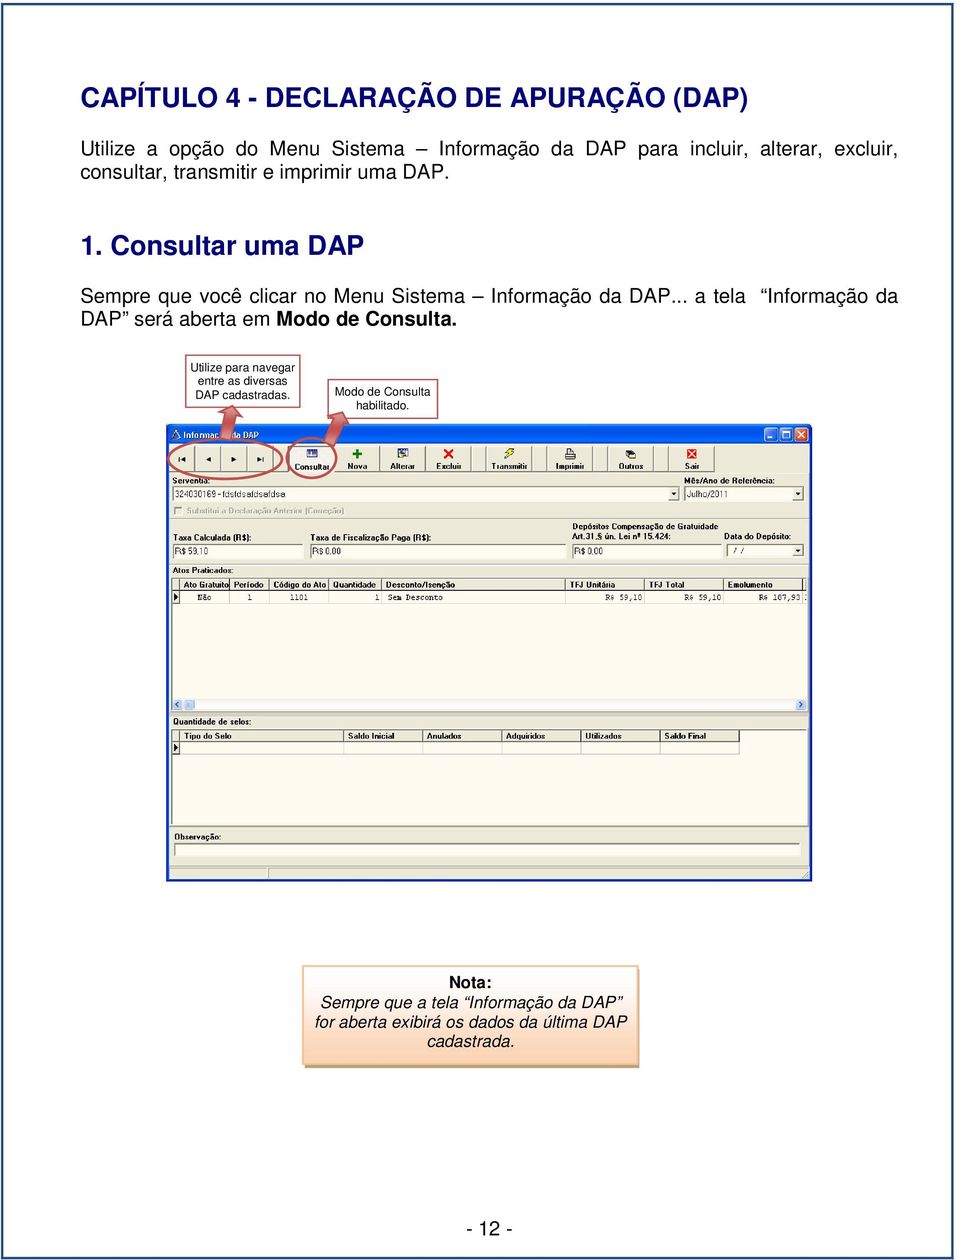 Consultar uma DAP Sempre que você clicar no Menu Sistema Informação da DAP.